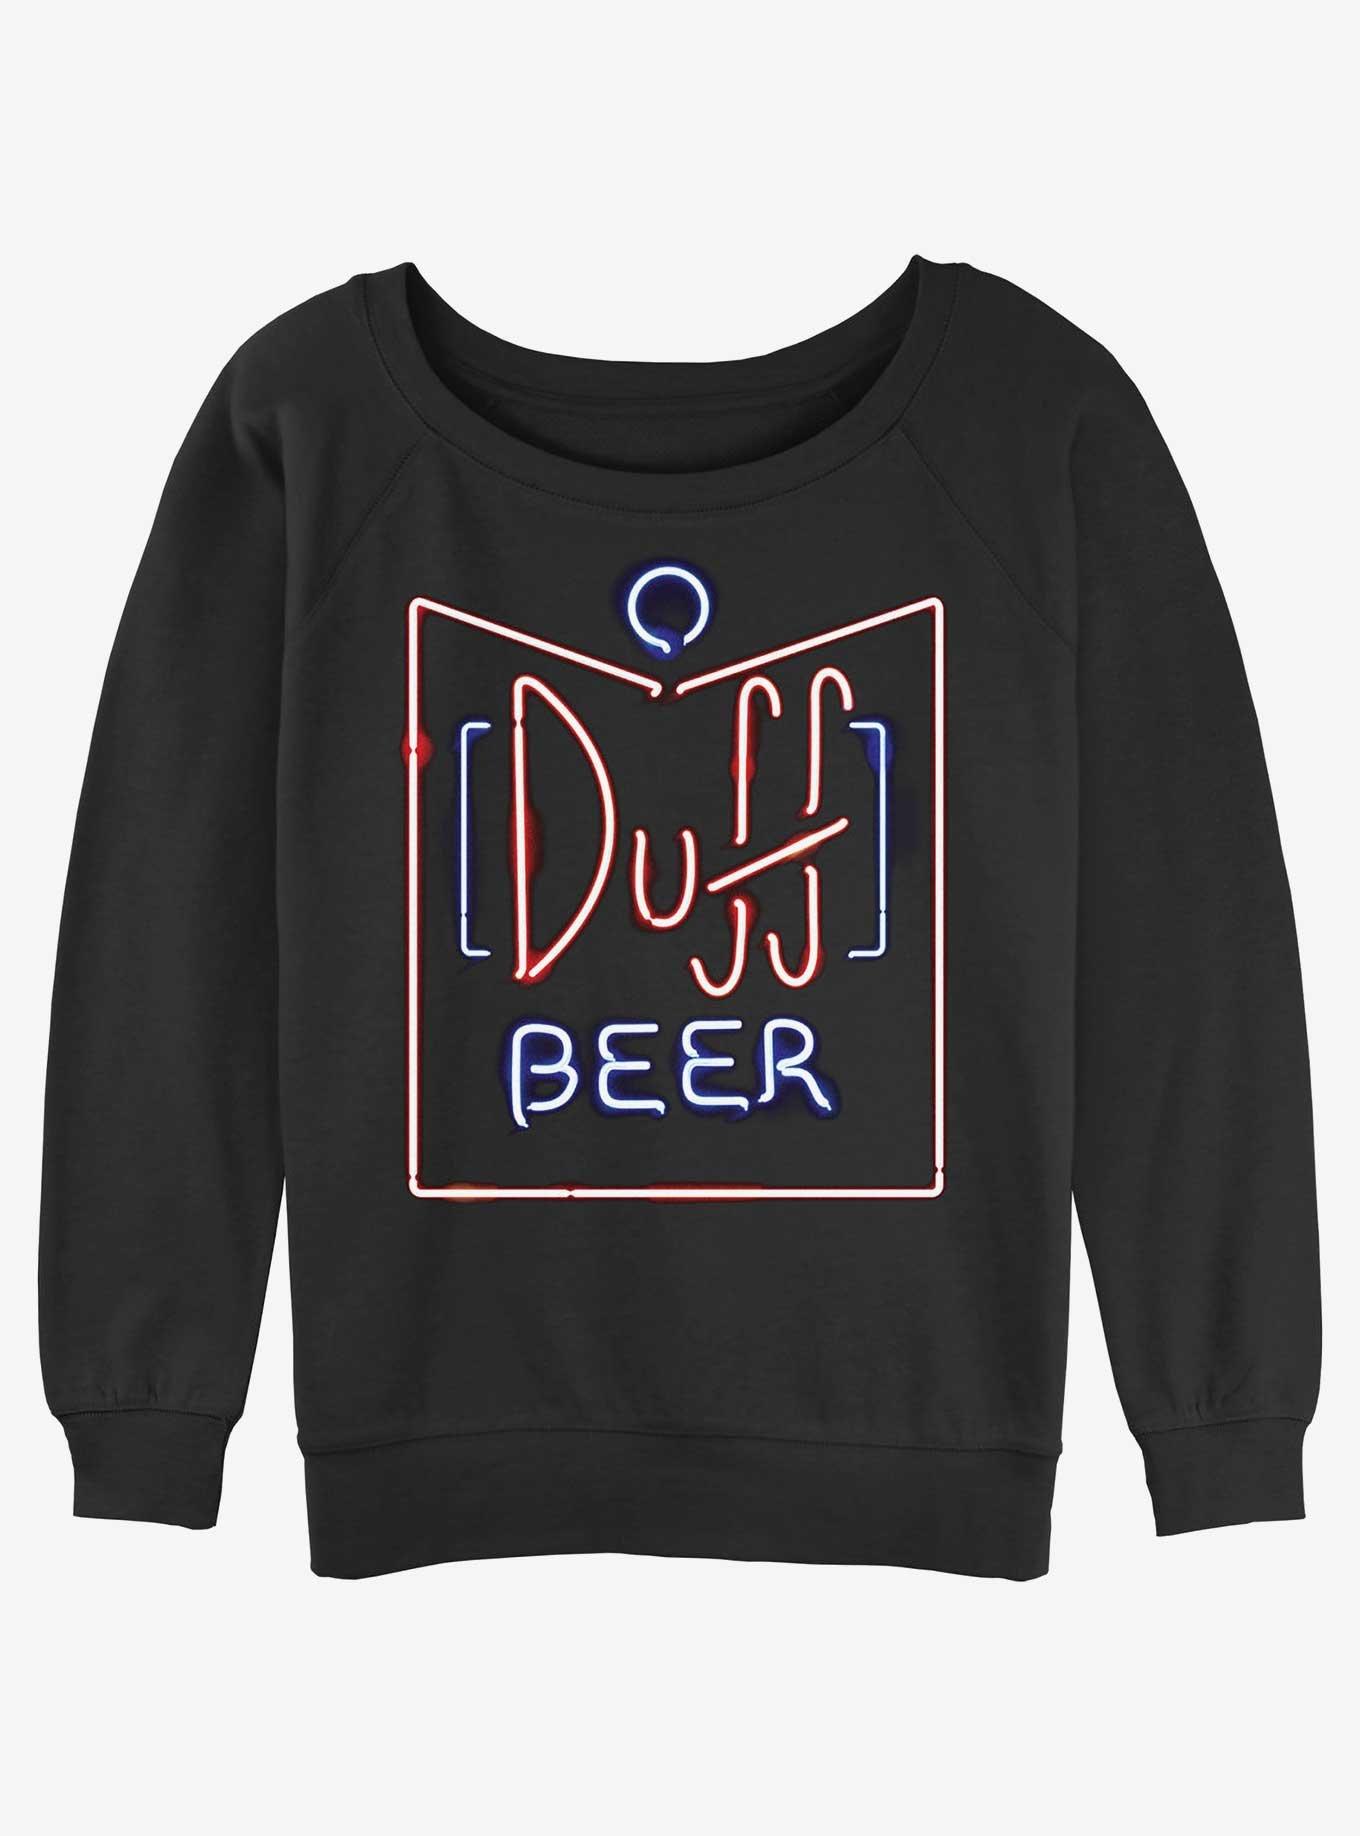 The Simpsons Duff Beer Girls Slouchy Sweatshirt